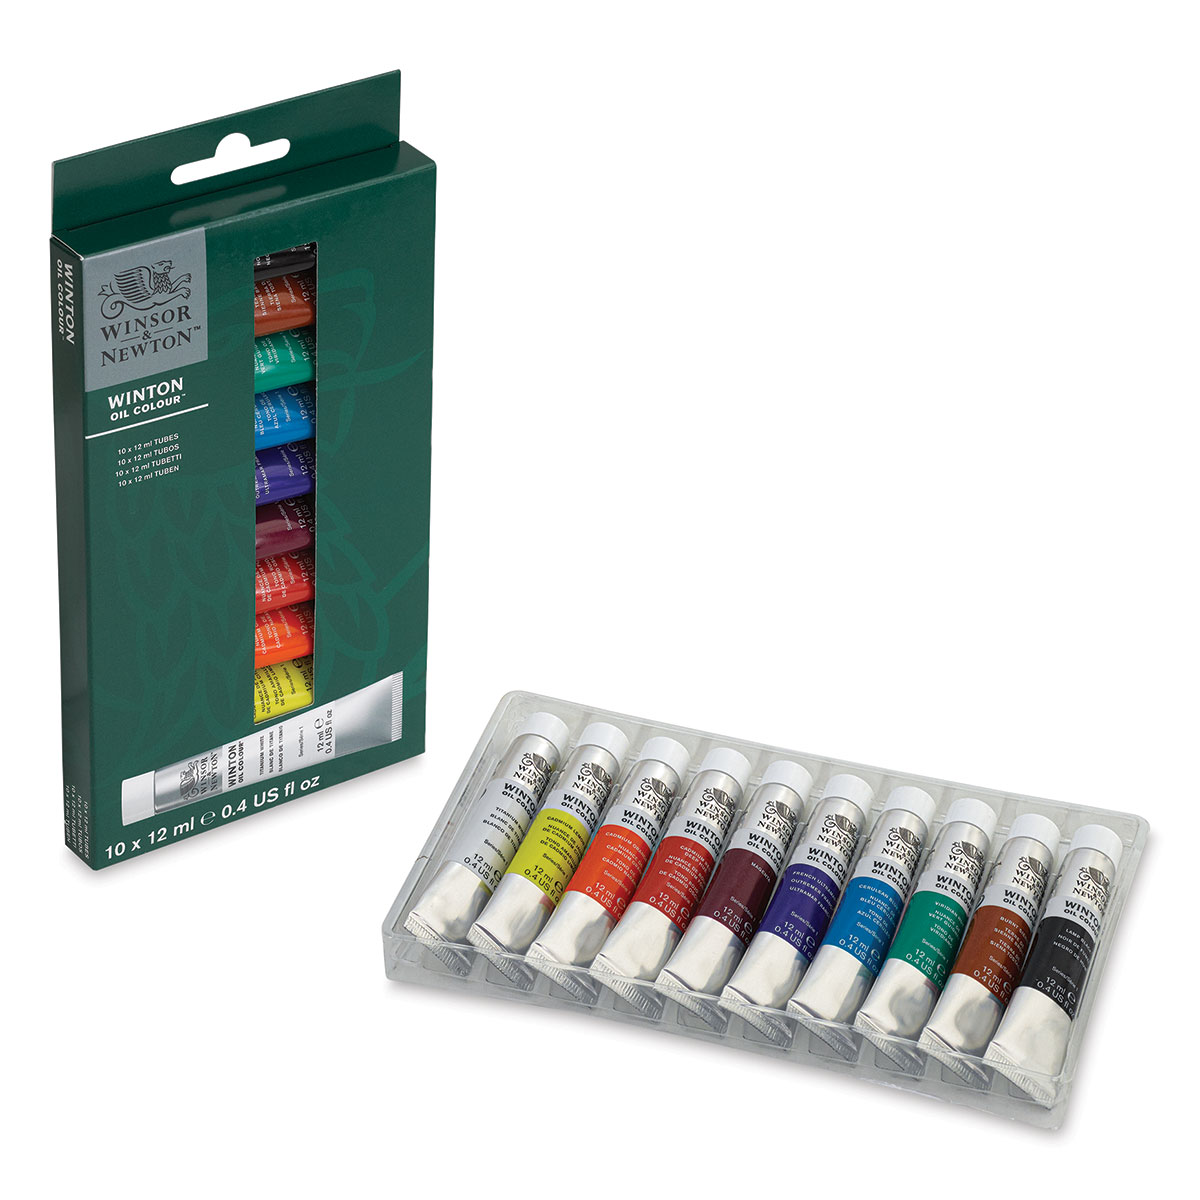  Winsor & Newton Winton Oil Color Paint Set, 20 x 12ml (0.4-oz)  Tubes